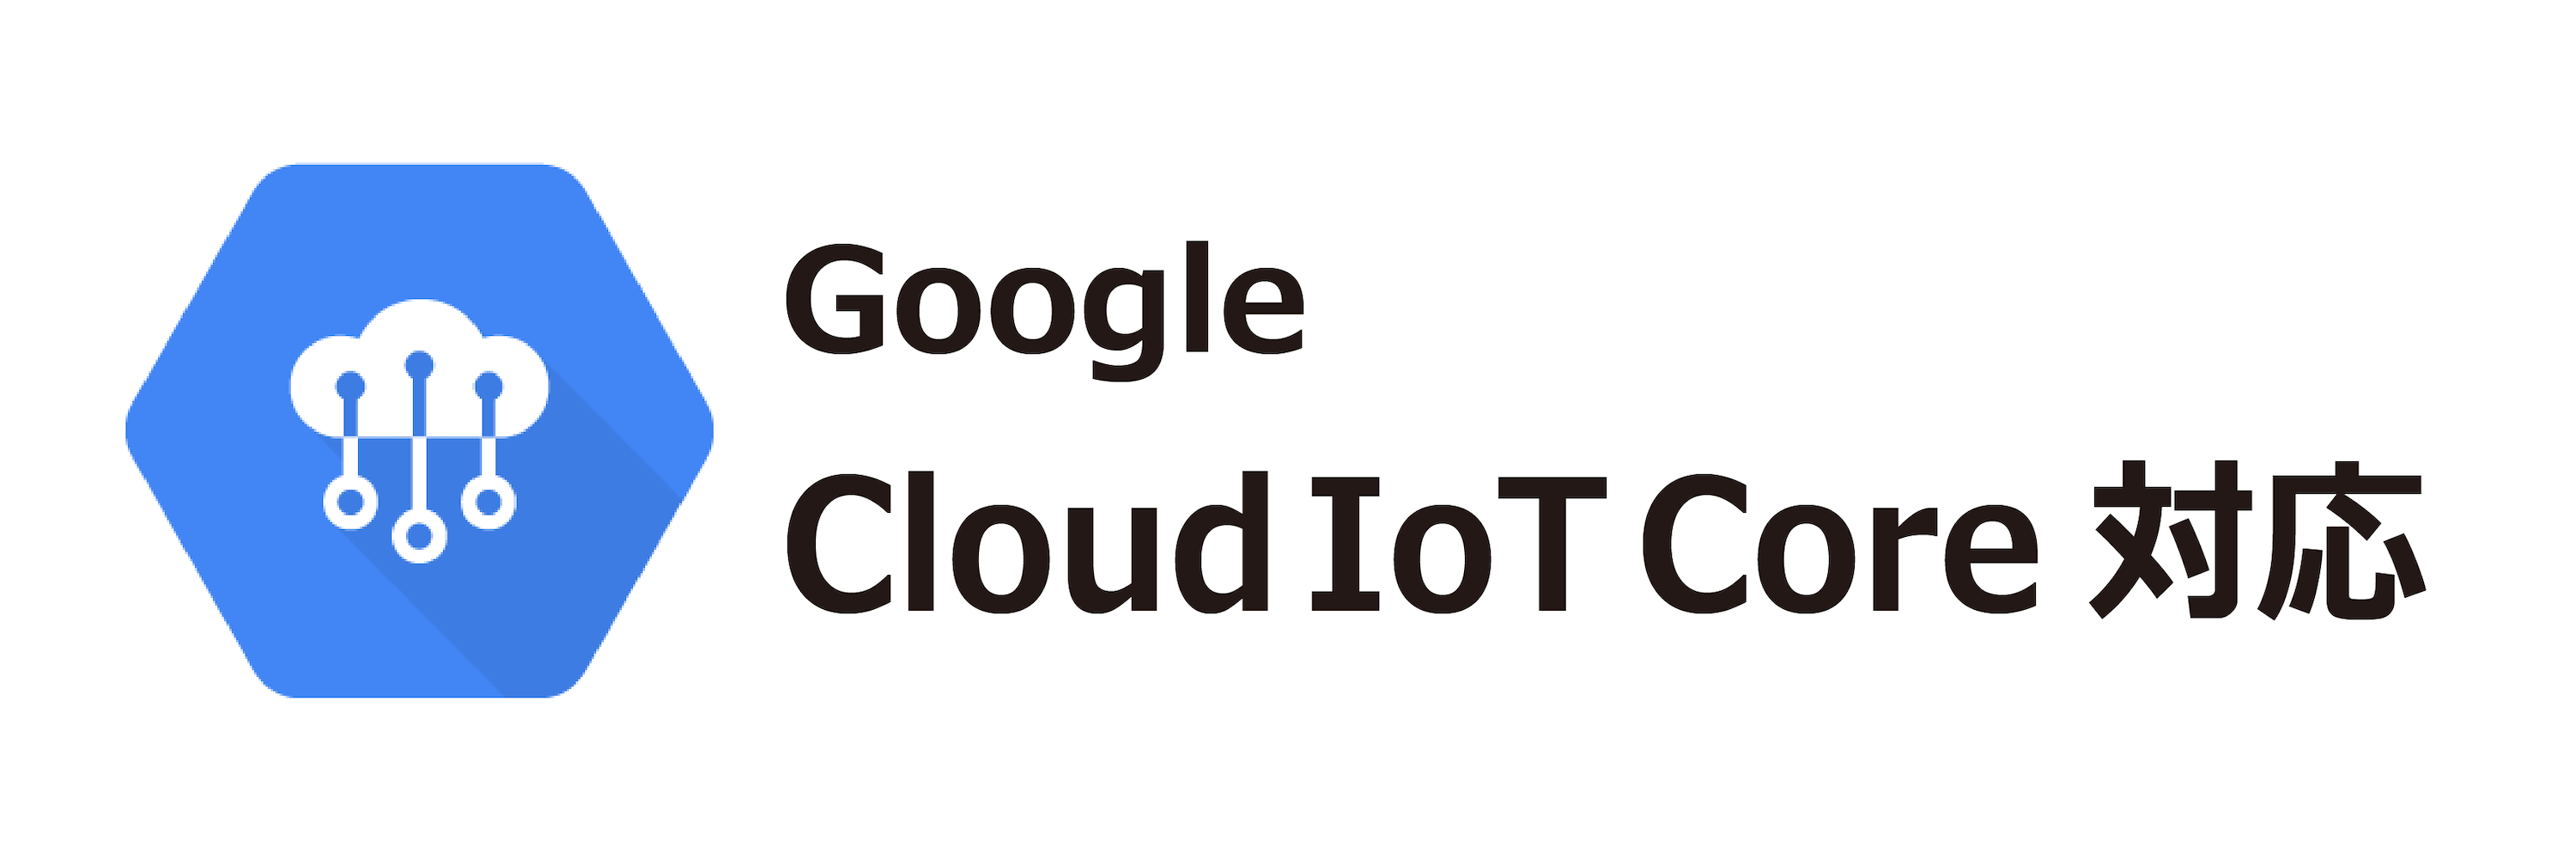 Google Cloud IoT Core対応